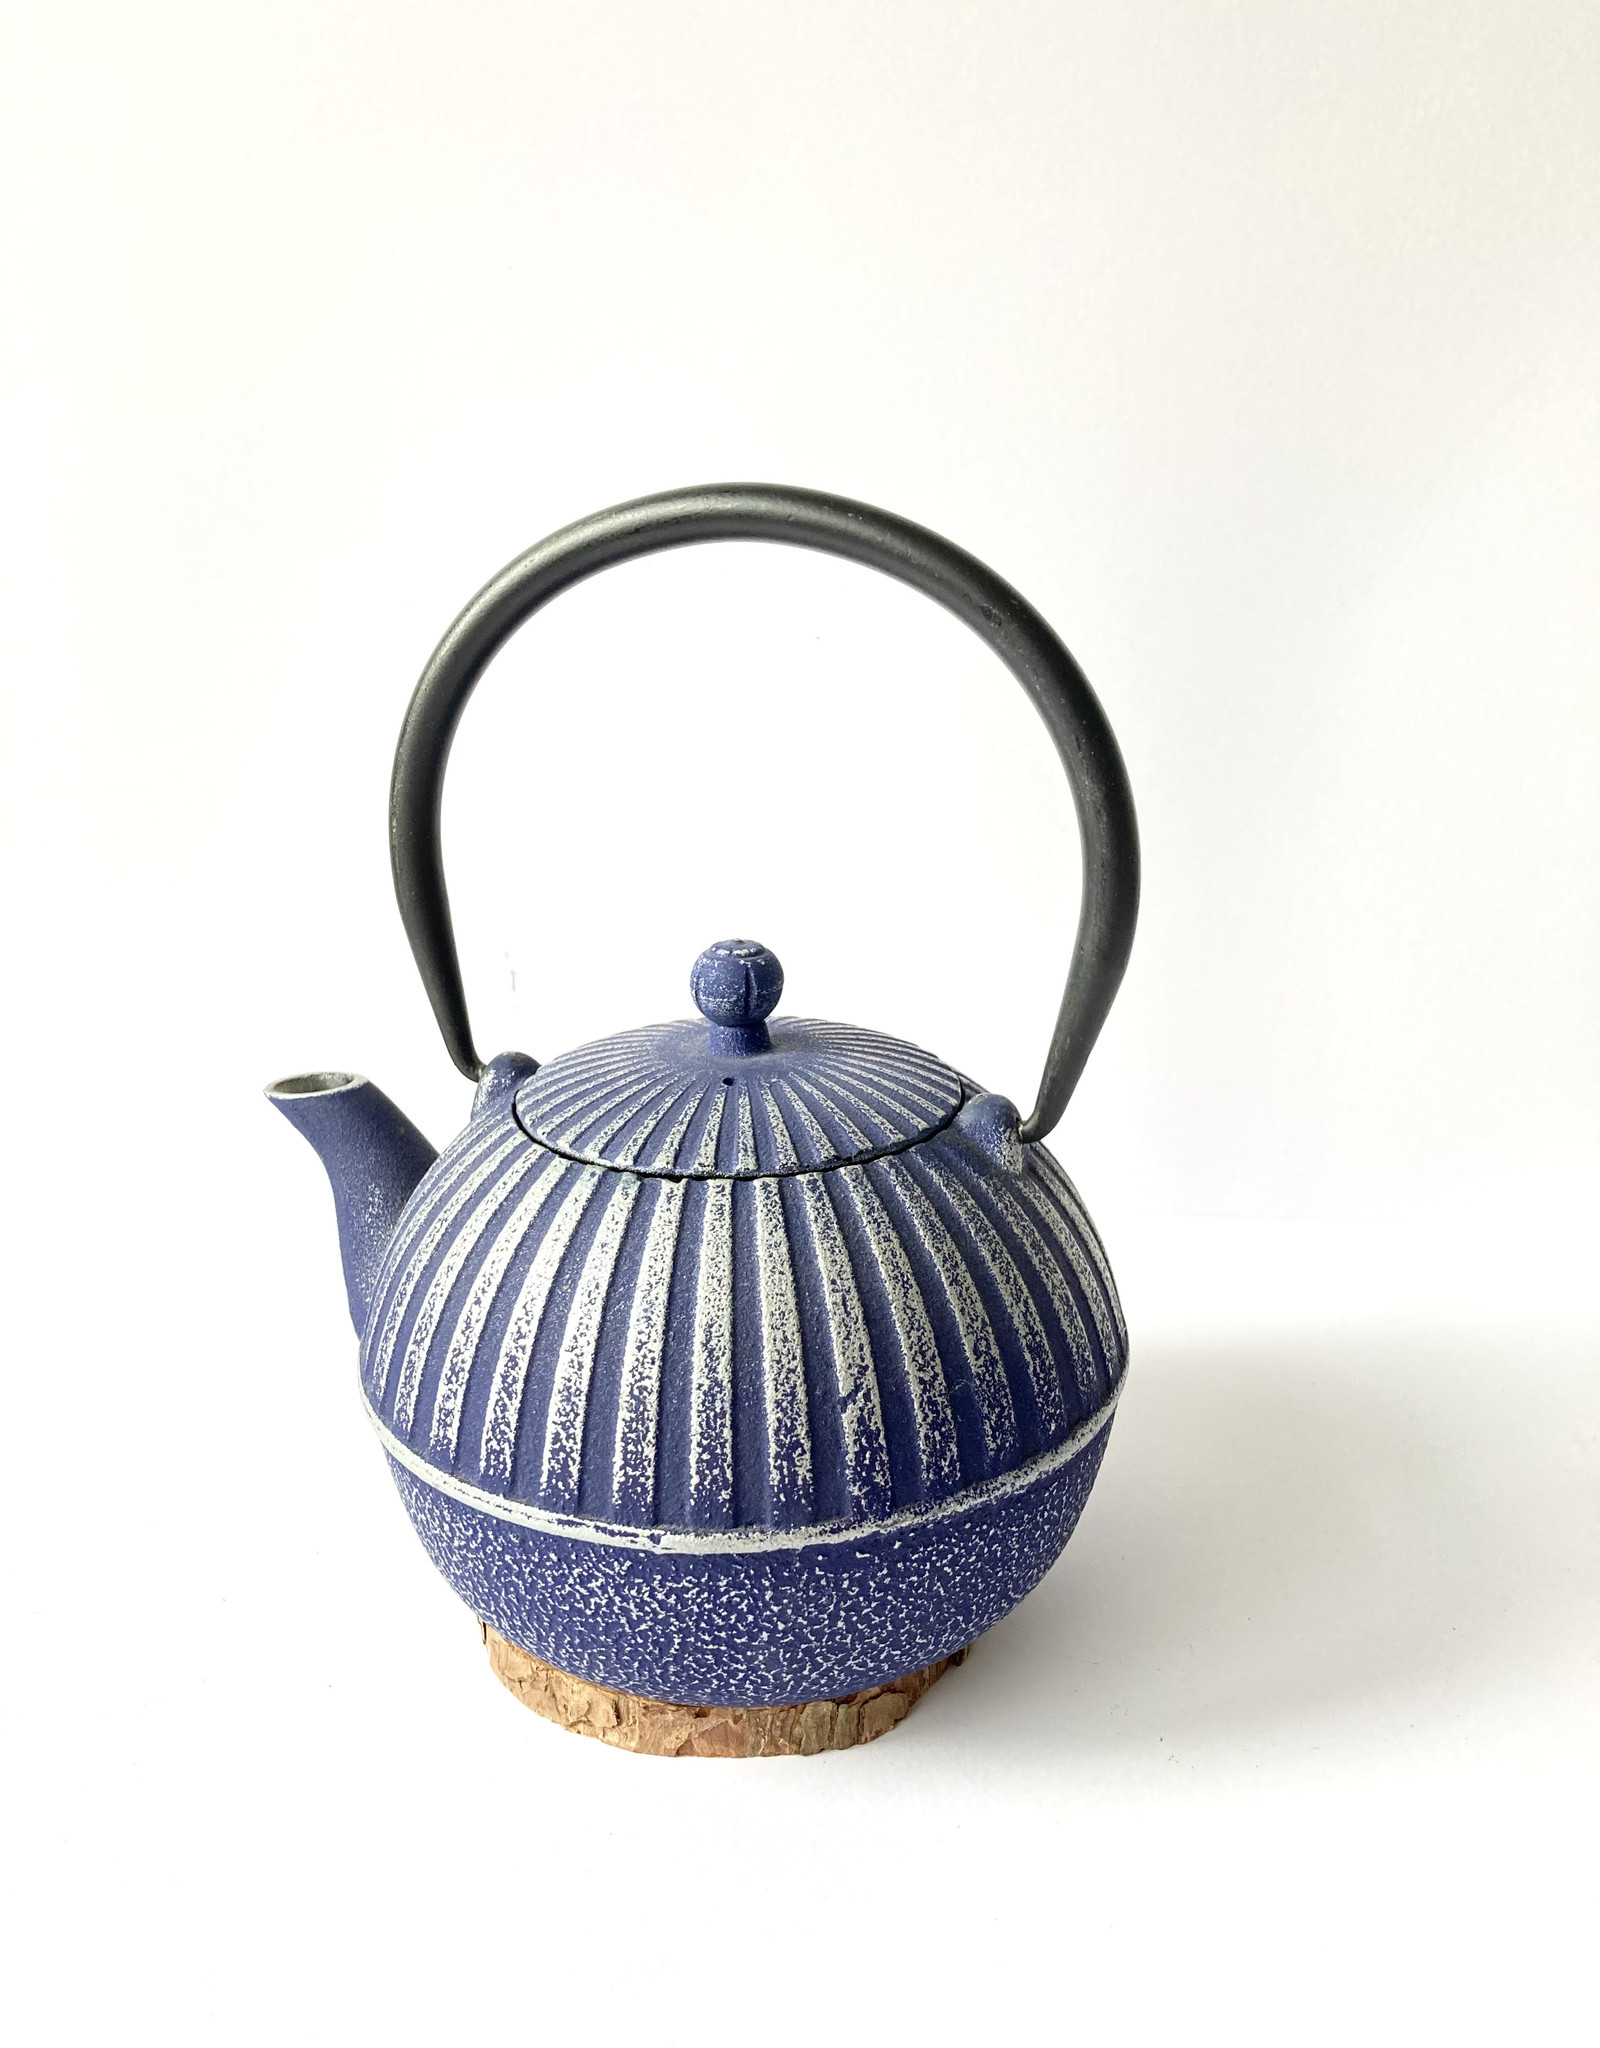 Light blue cast iron teapot